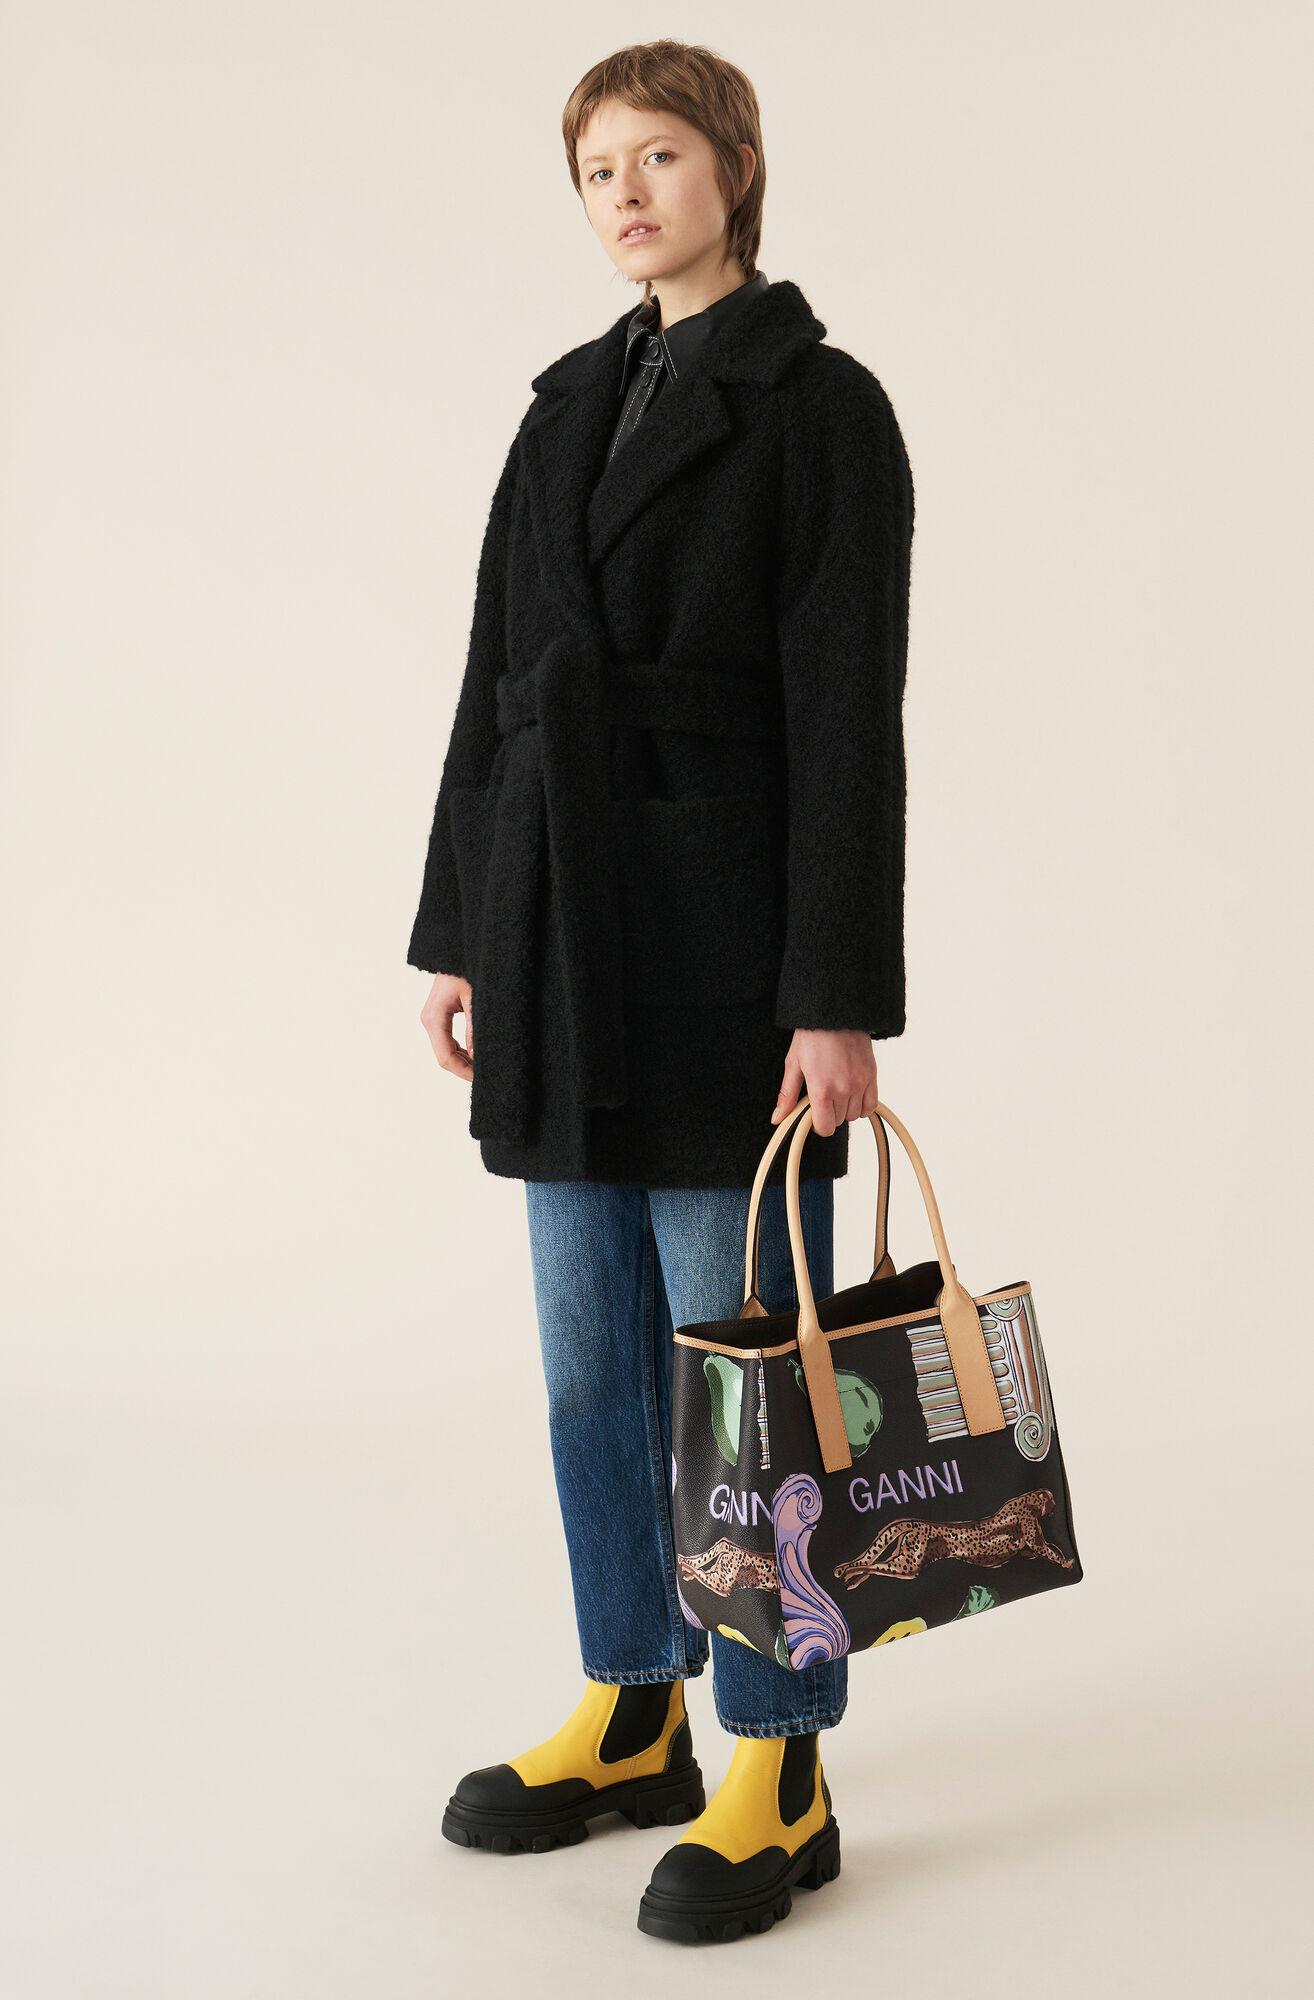 Manteau portefeuille en laine bouclée, Polyester, in colour Black - 1 - GANNI